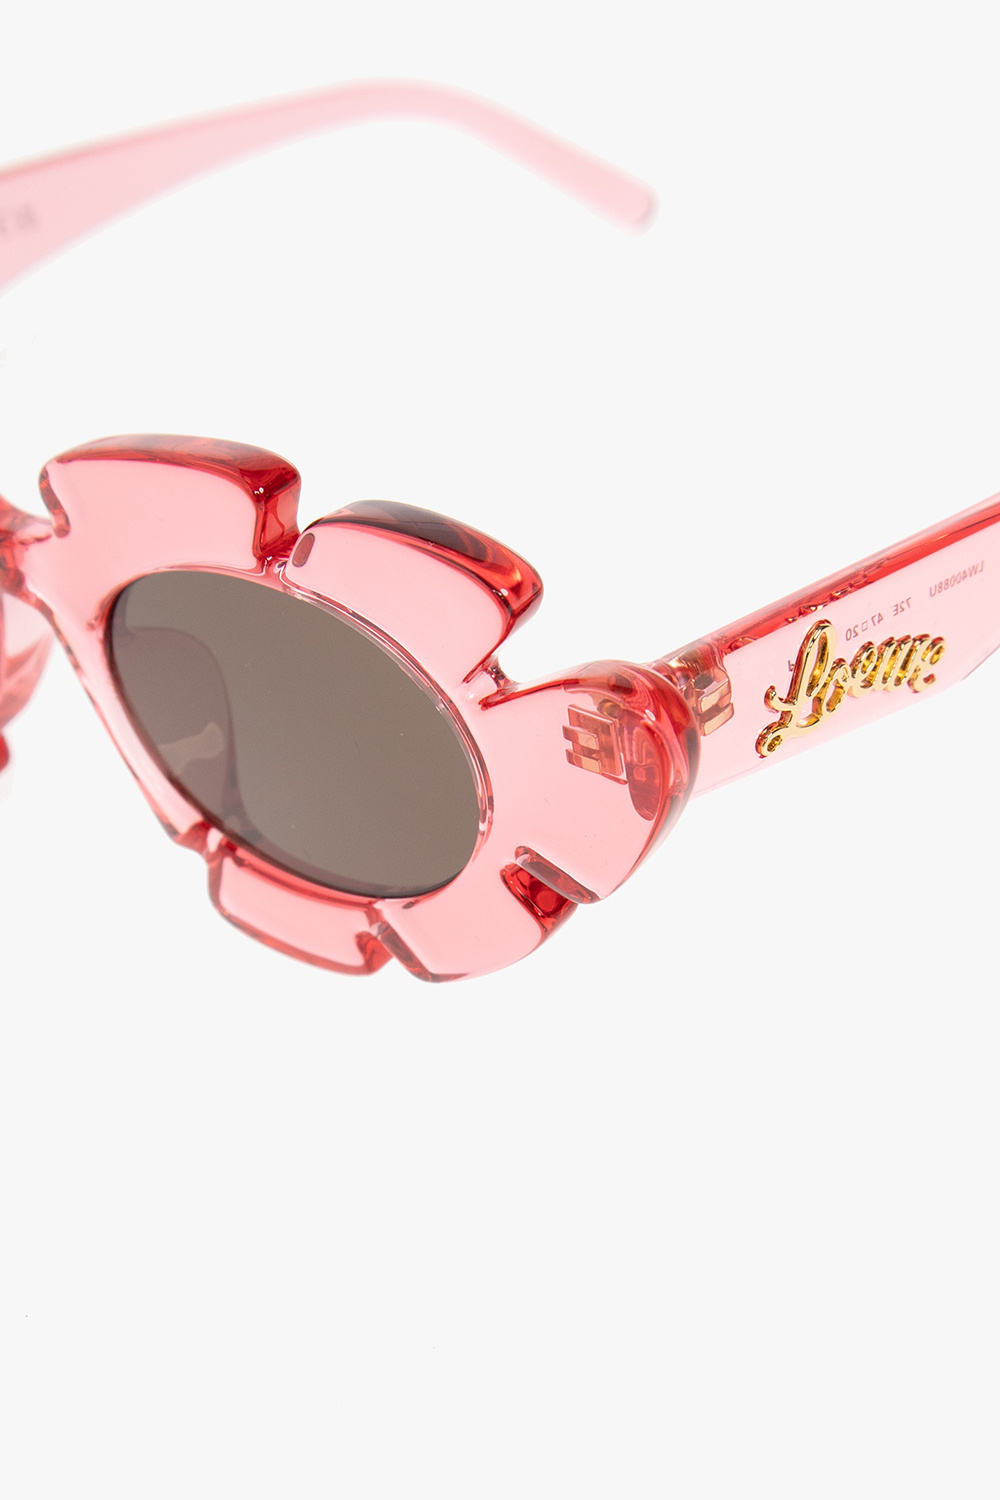 Loewe Eyewear sunglasses